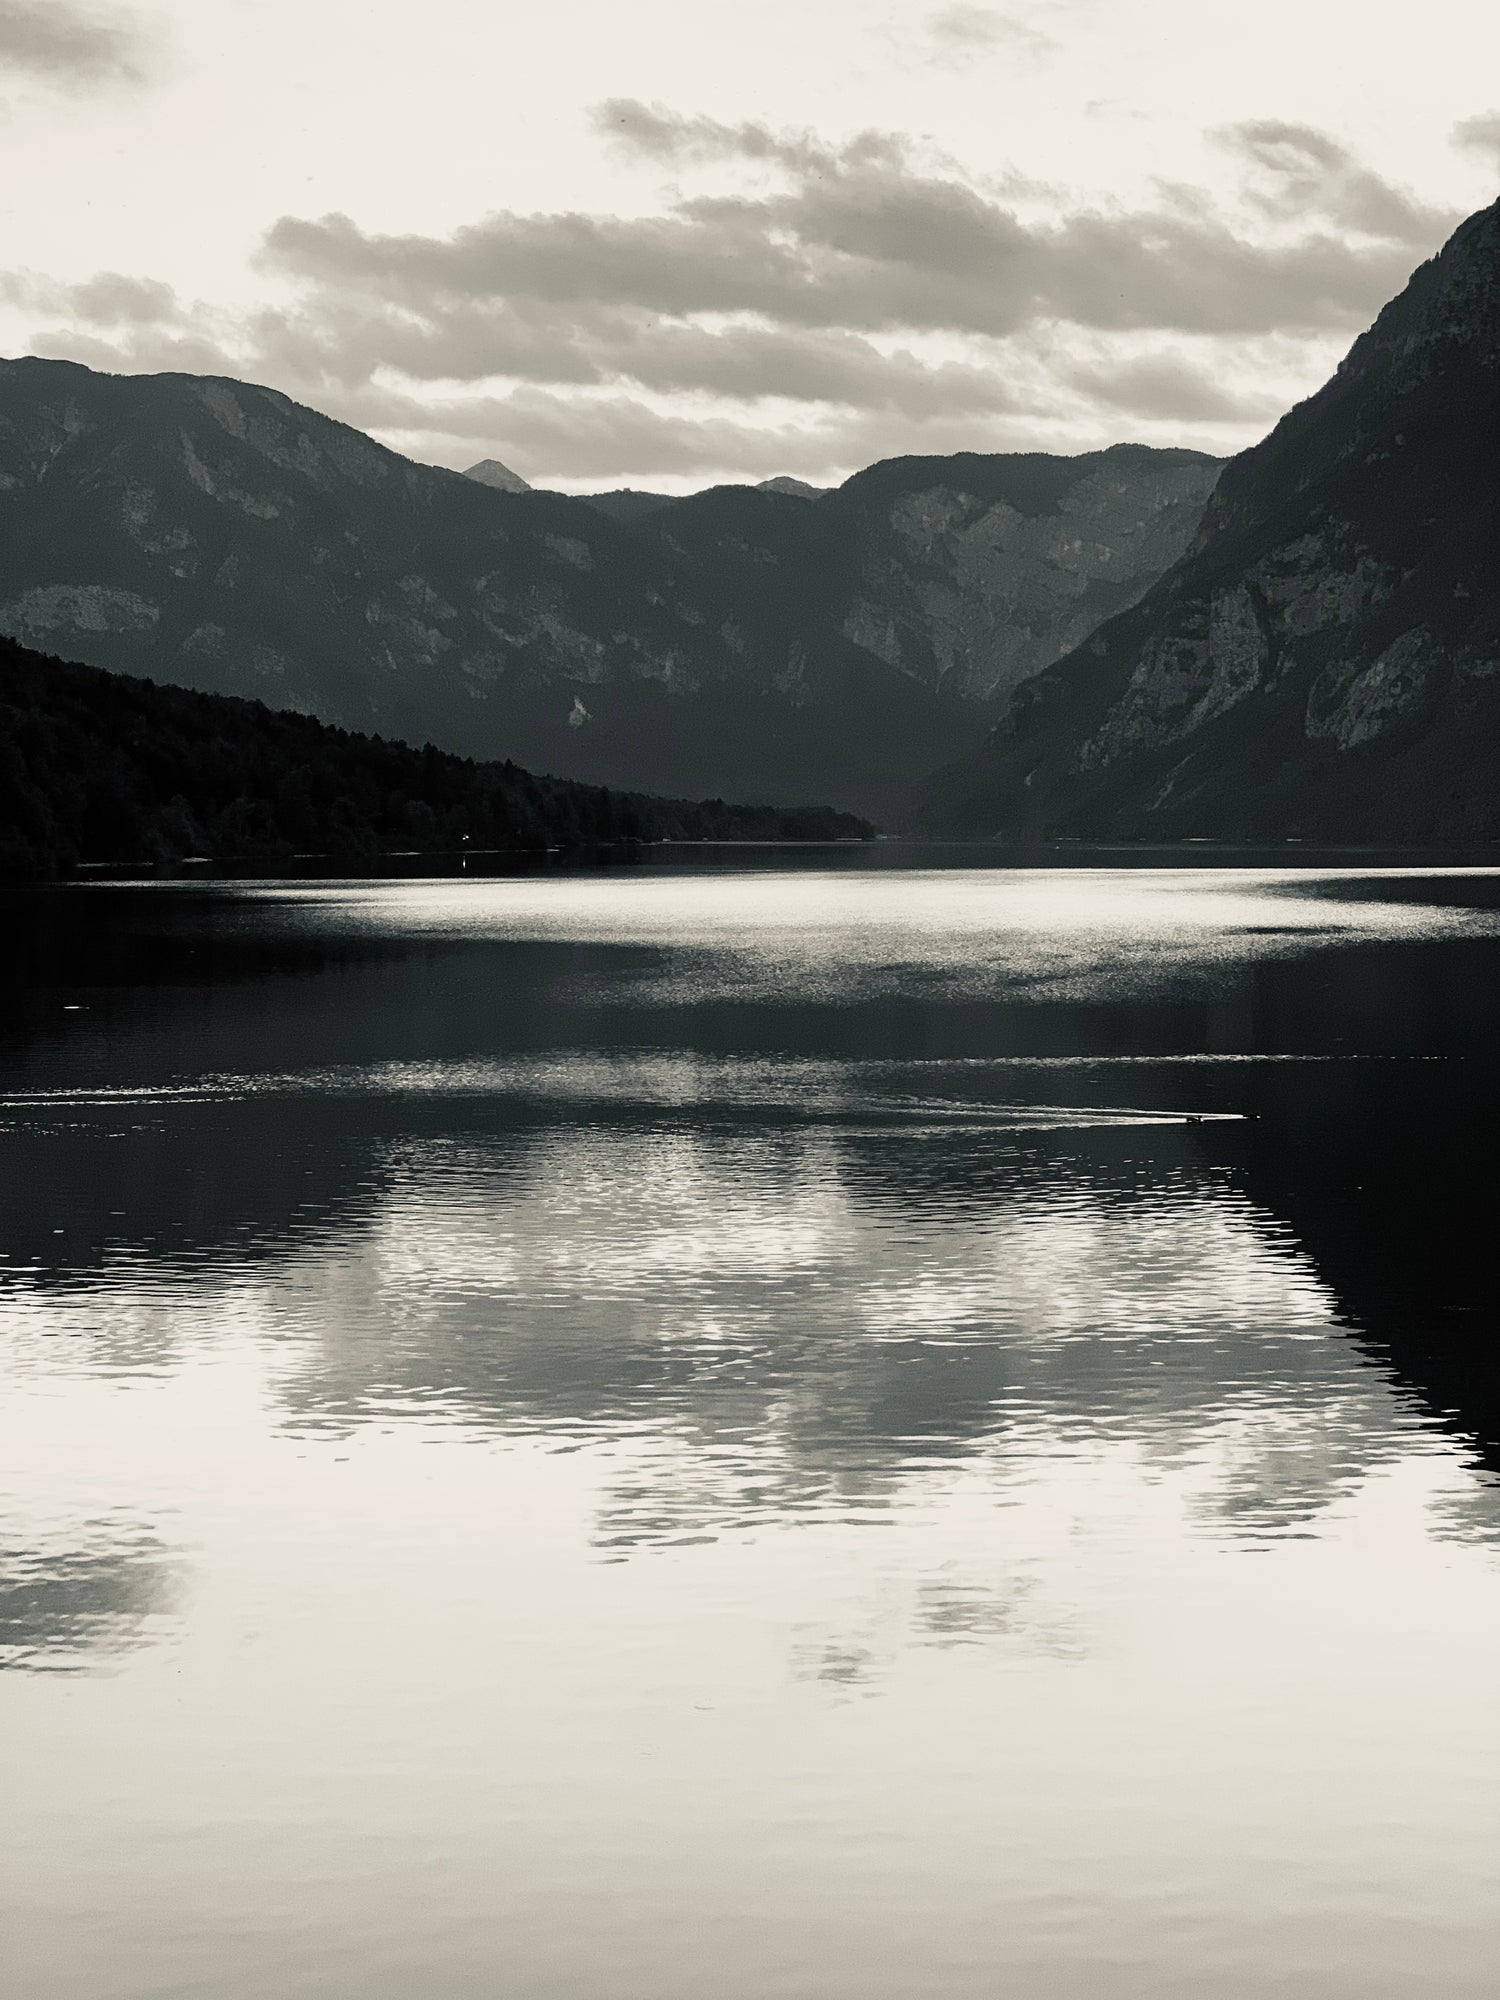 Schwarz-Weiß-Bild eines Sees als Hintergrundbild für den Text